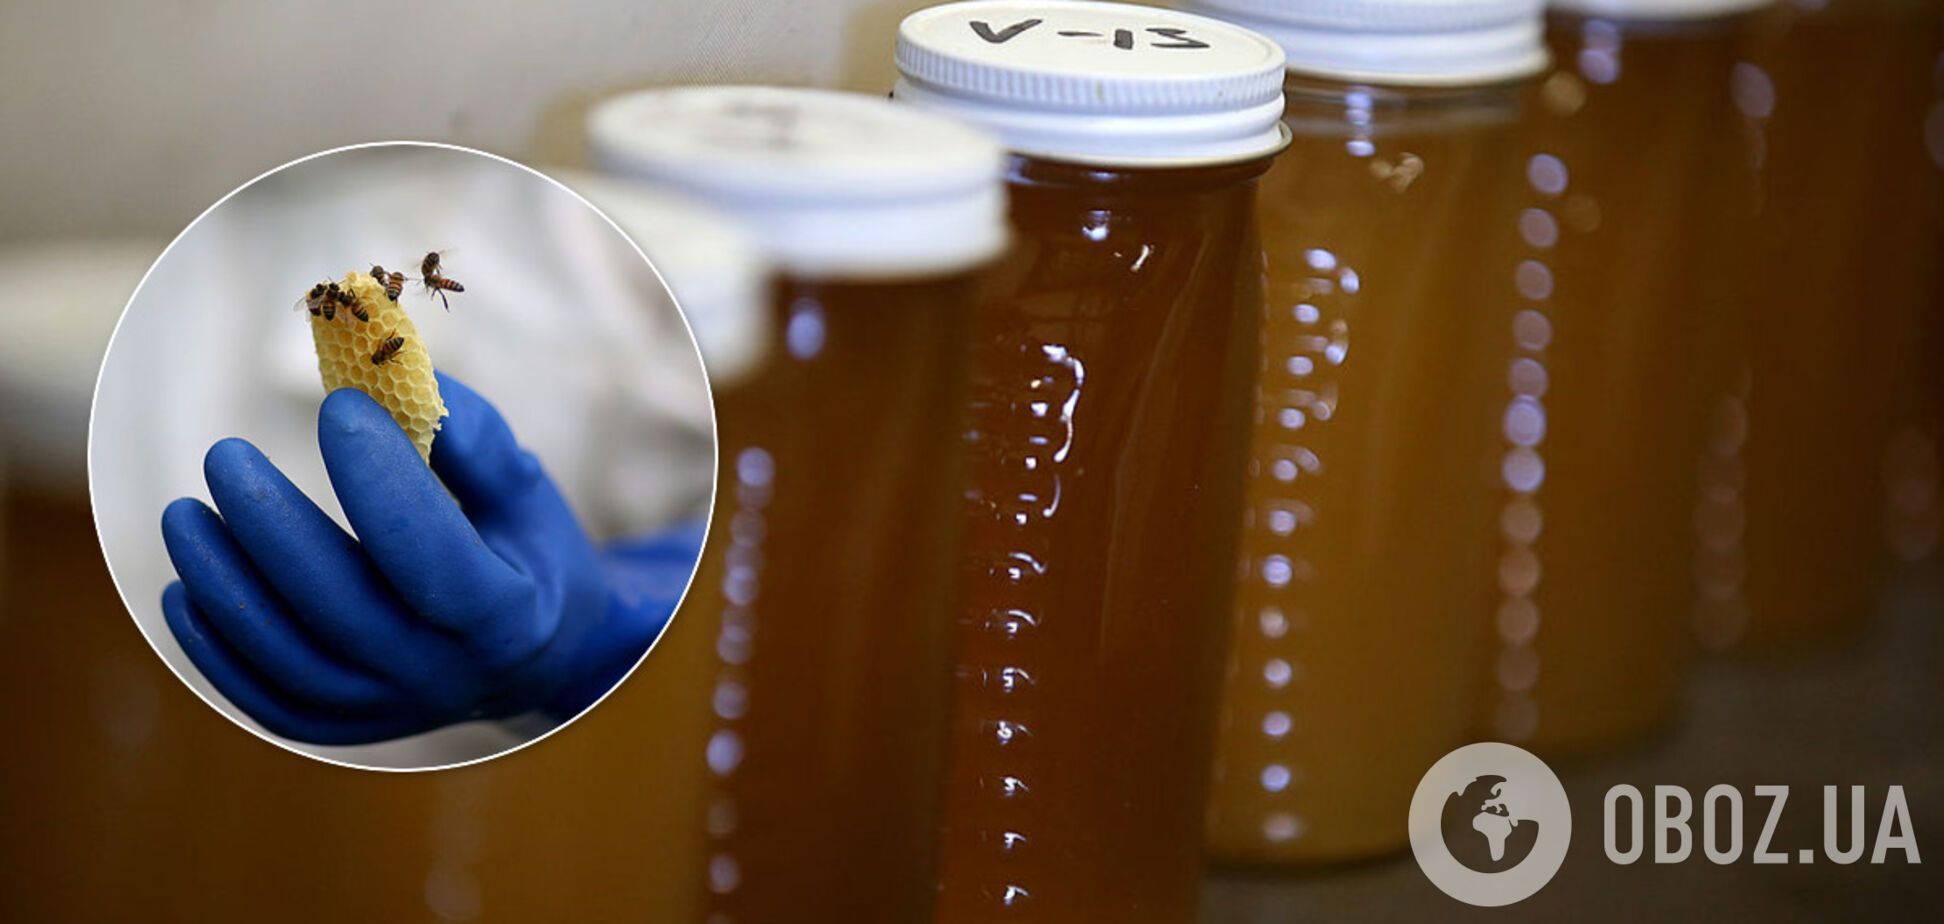 Україну завалив фальшивий мед, що підвищує ризик раку: результати дослідження